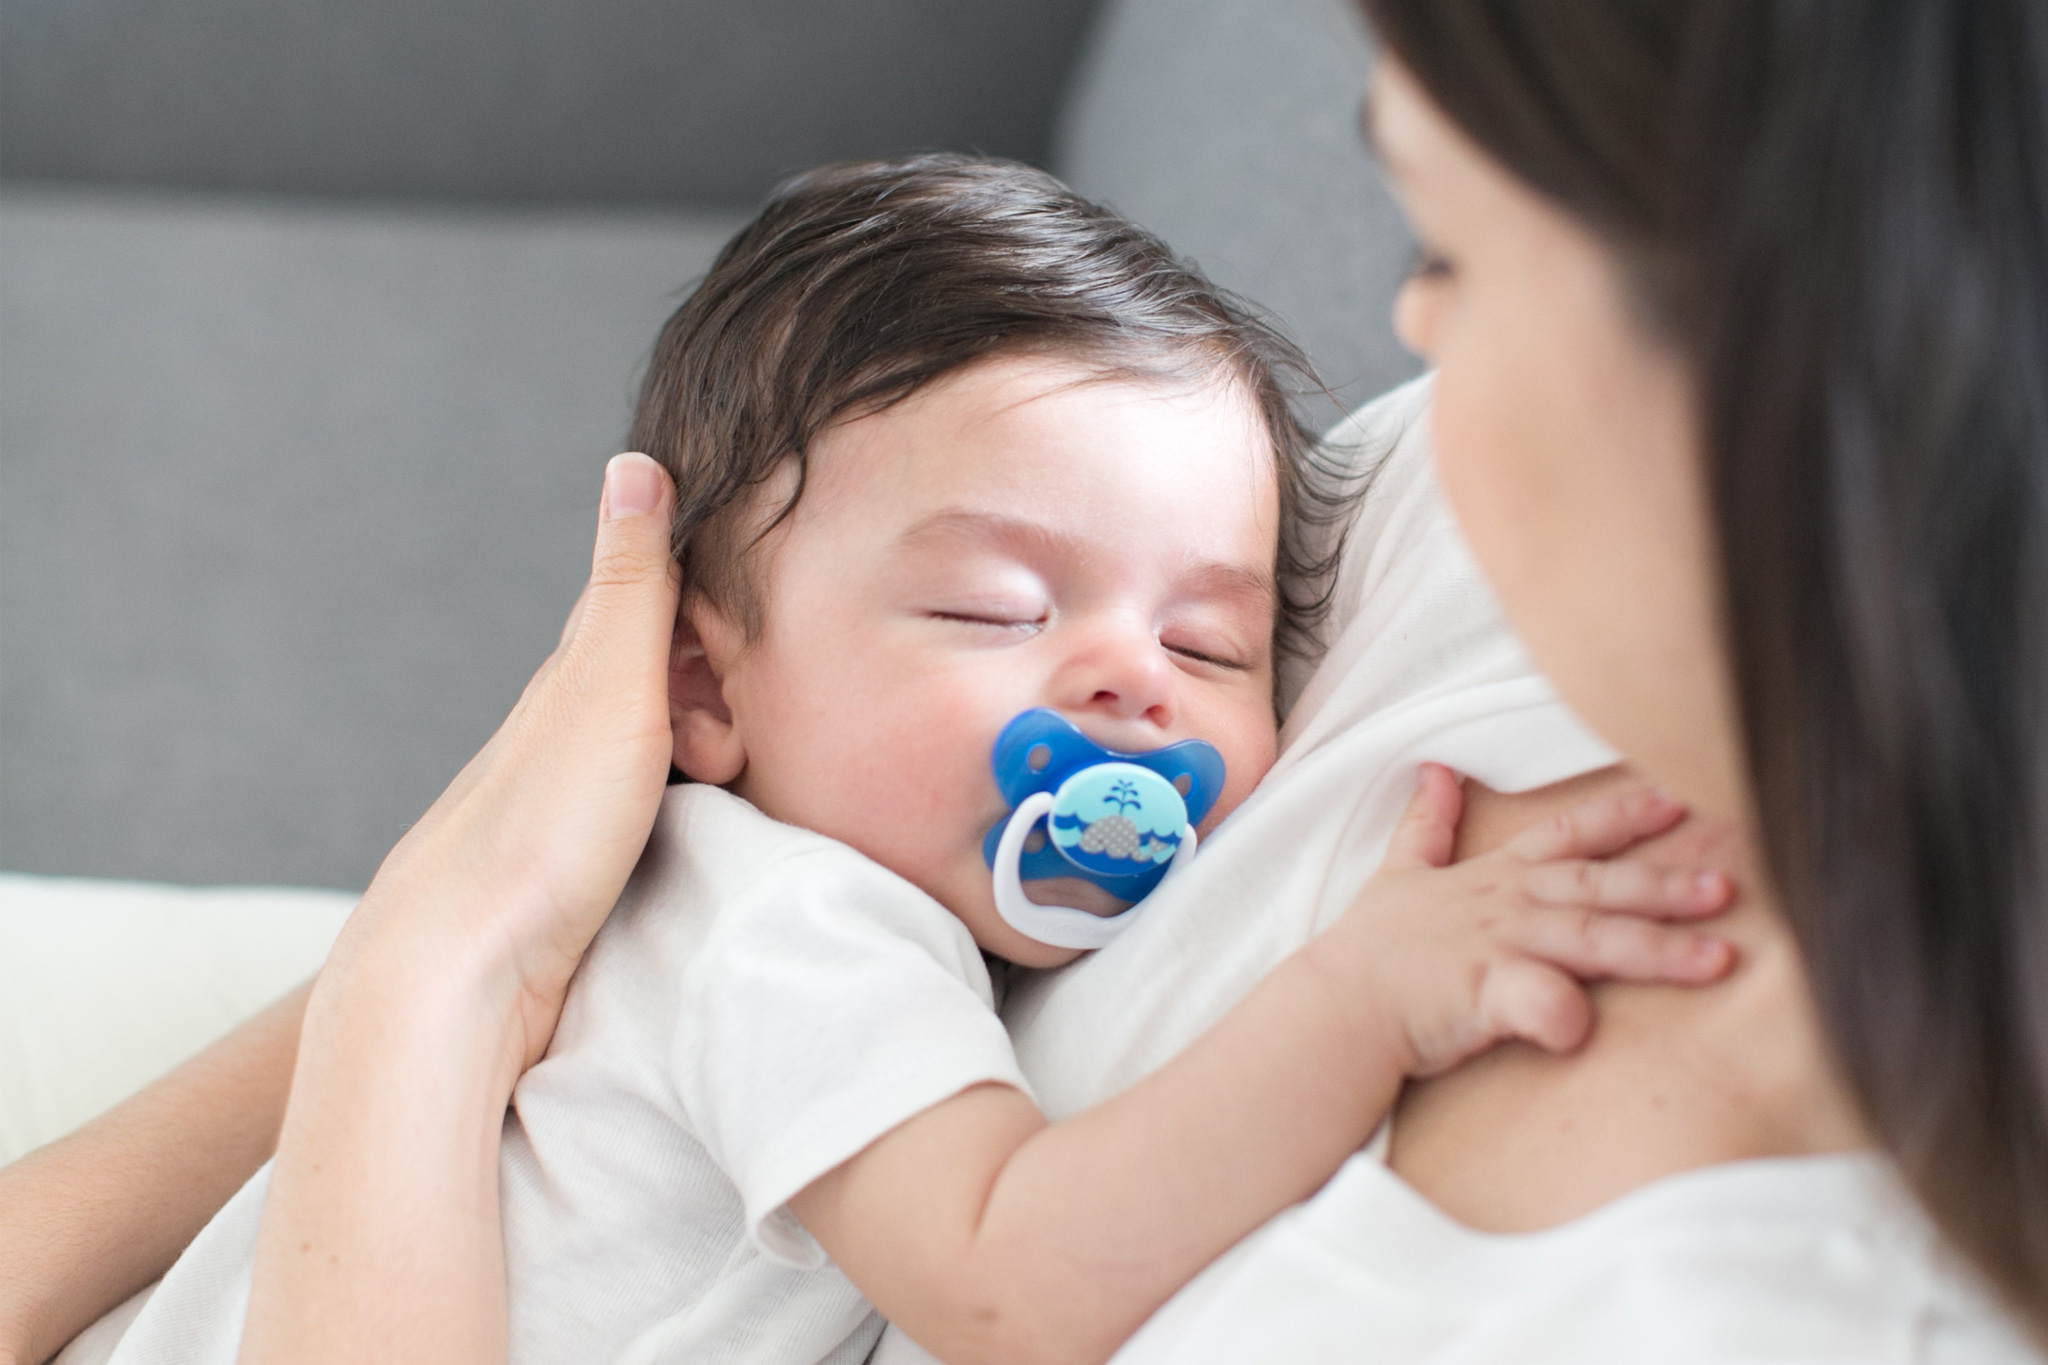  Dr. Brown's PreVent - Chupete de ortodoncia para bebé, canal de  aire sin succión, el escudo de mariposa contorneado es suave para la cara,  fabricado en Estados Unidos, etapa 1, 0.0-19.7